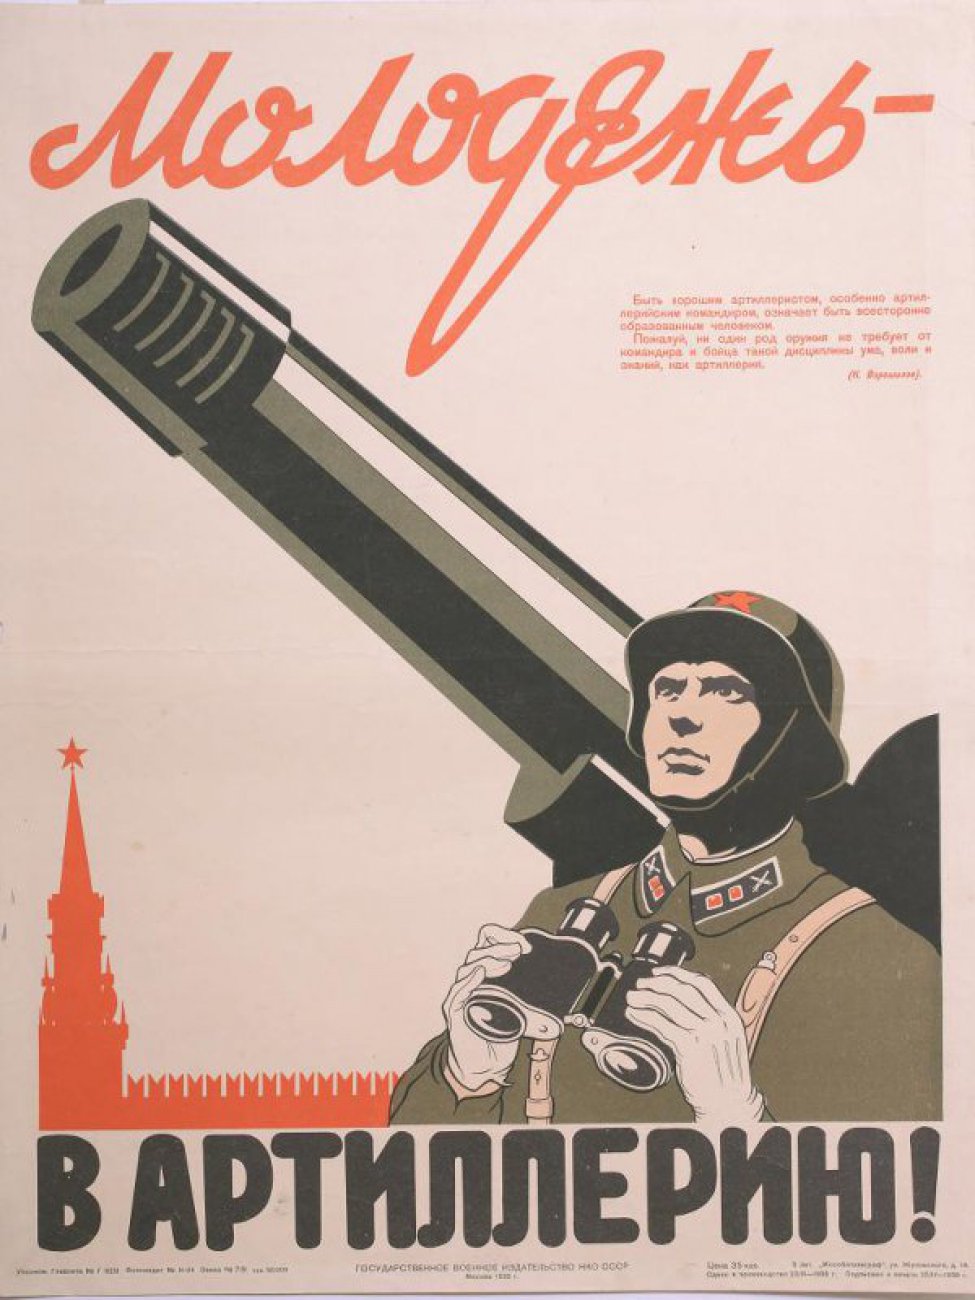 Изображен справа по пояс артиллерист с биноклем в руках  около дула пушки. Слева Кремлевская башня со звездой красного цвета. На верху текст: "Быть...артиллерия" ( К. Ворошилов).